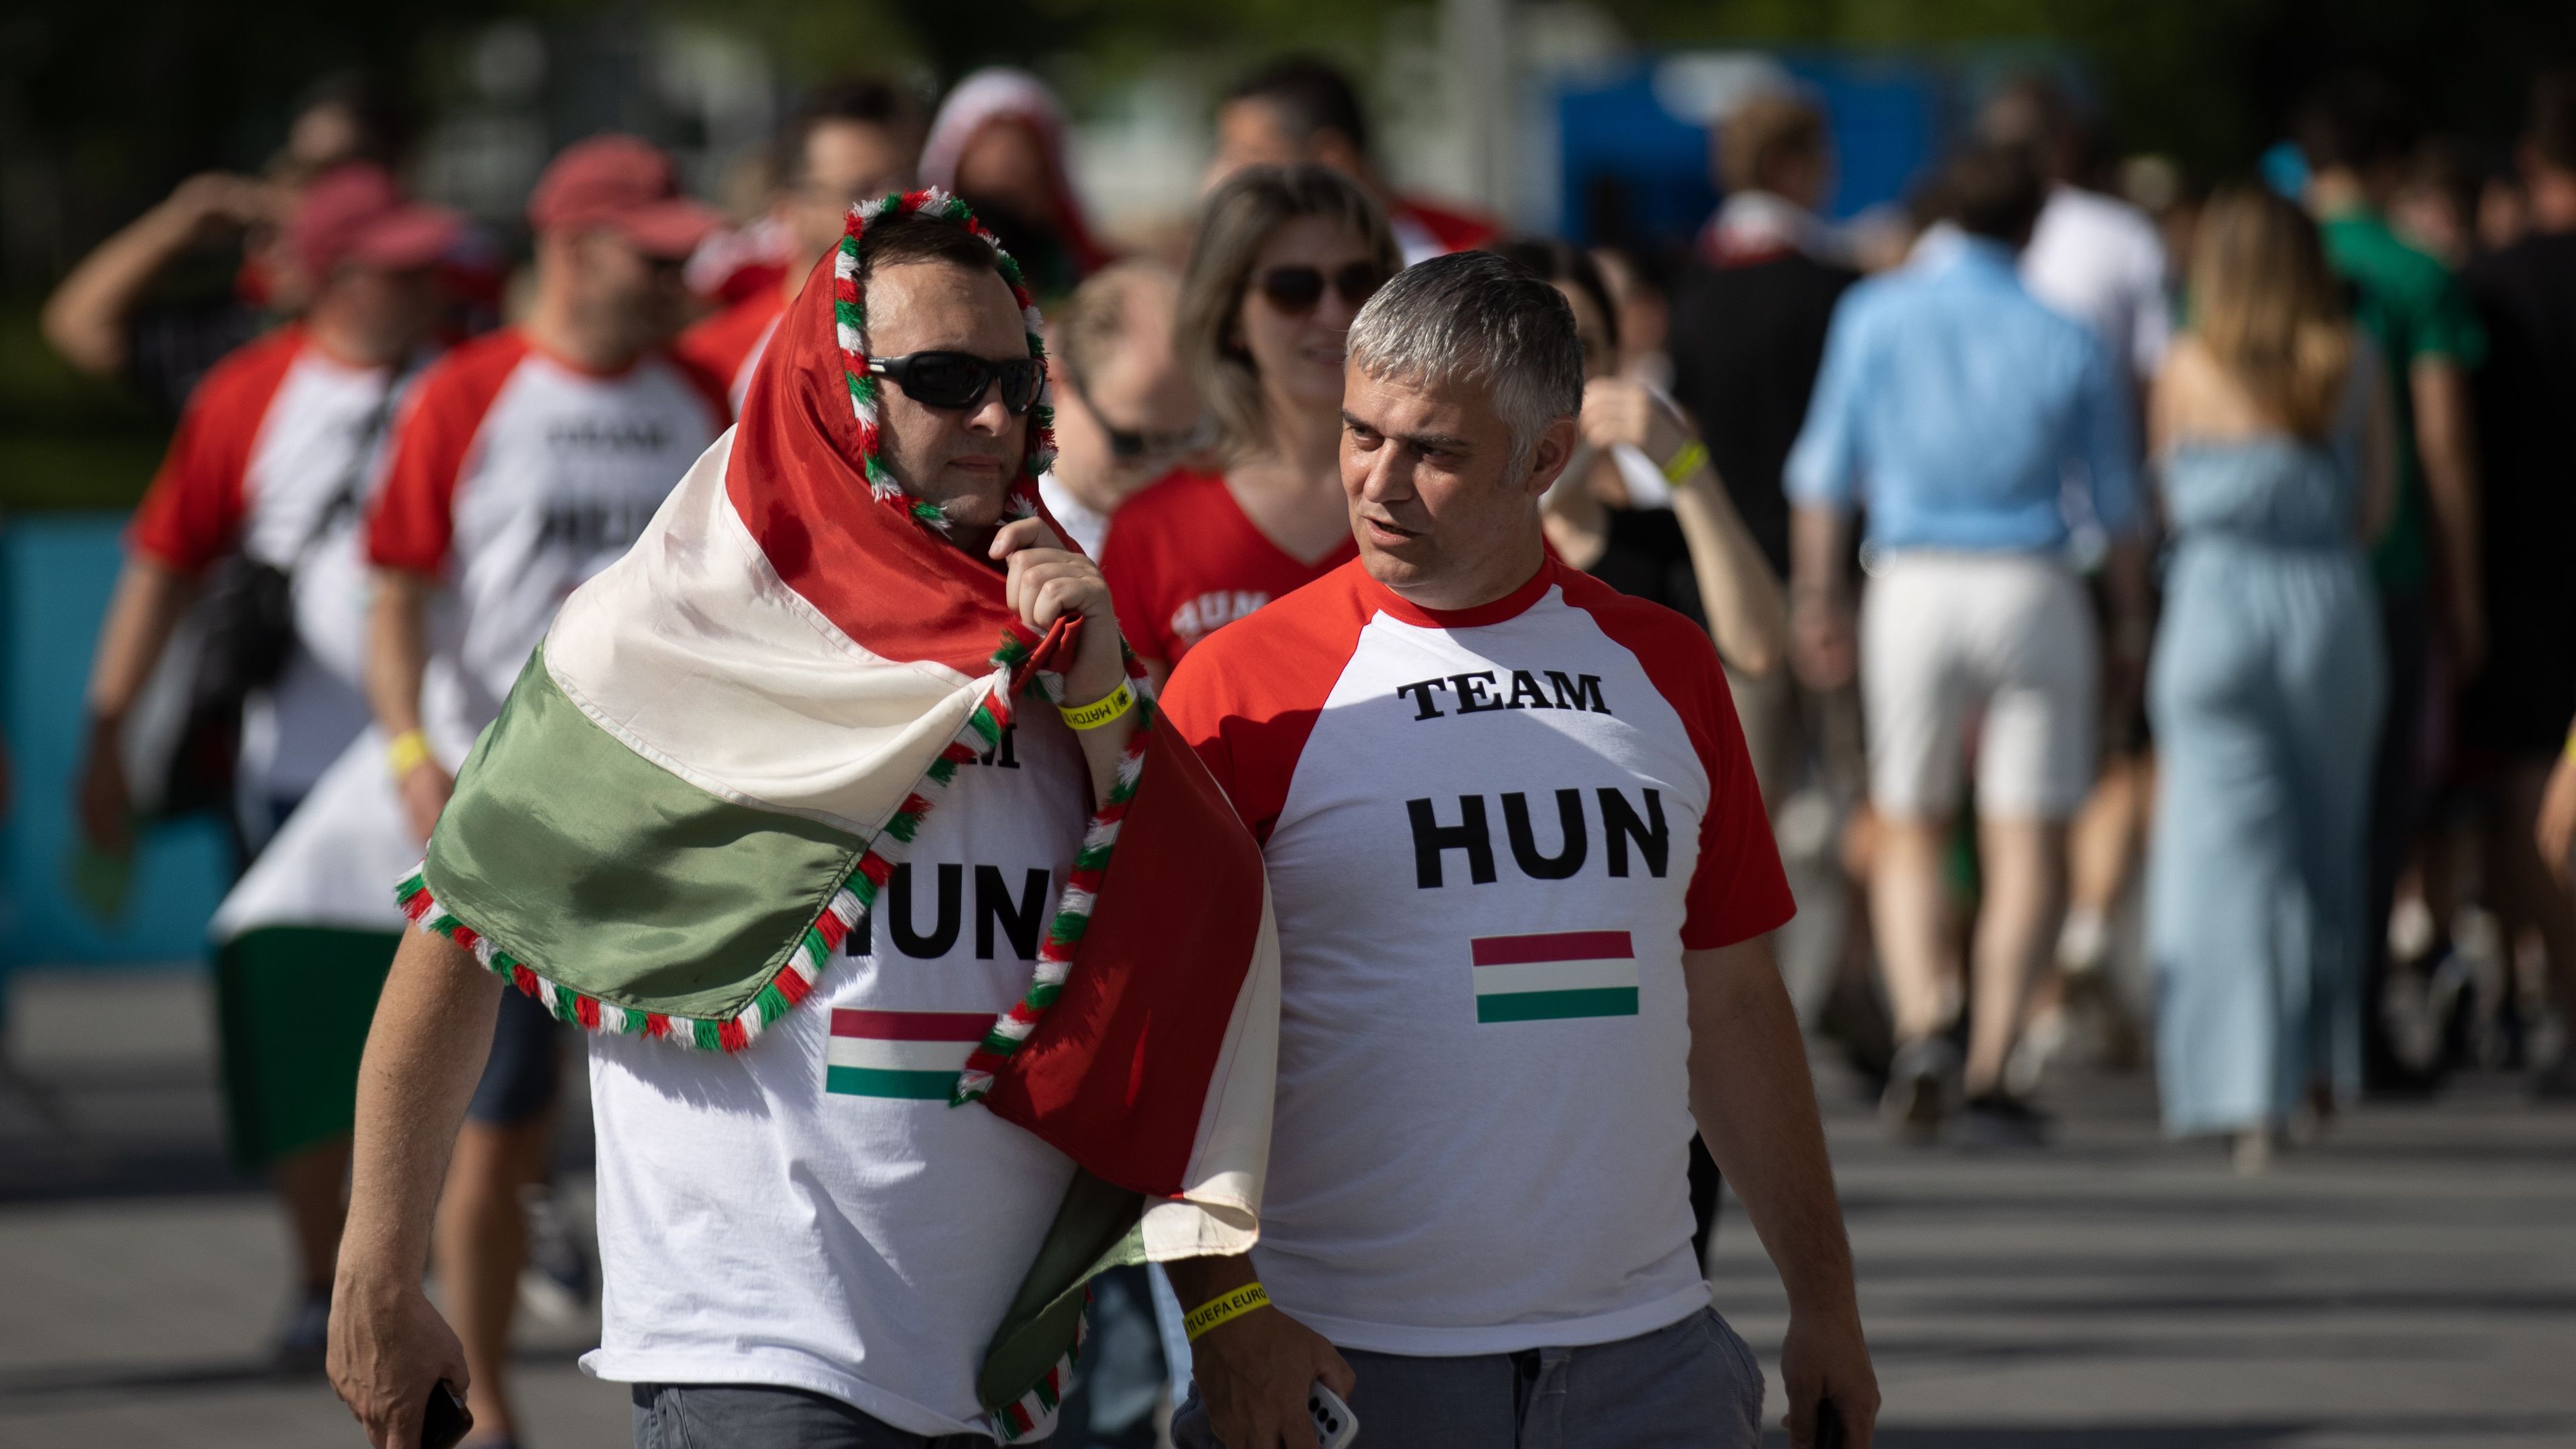 Egyes magyar szurkolók lemaradhatnak a válogatott Svájc elleni meccséről, mert késik a Dortmundba tartó járat... (Fotó: Zsolnai Péter)